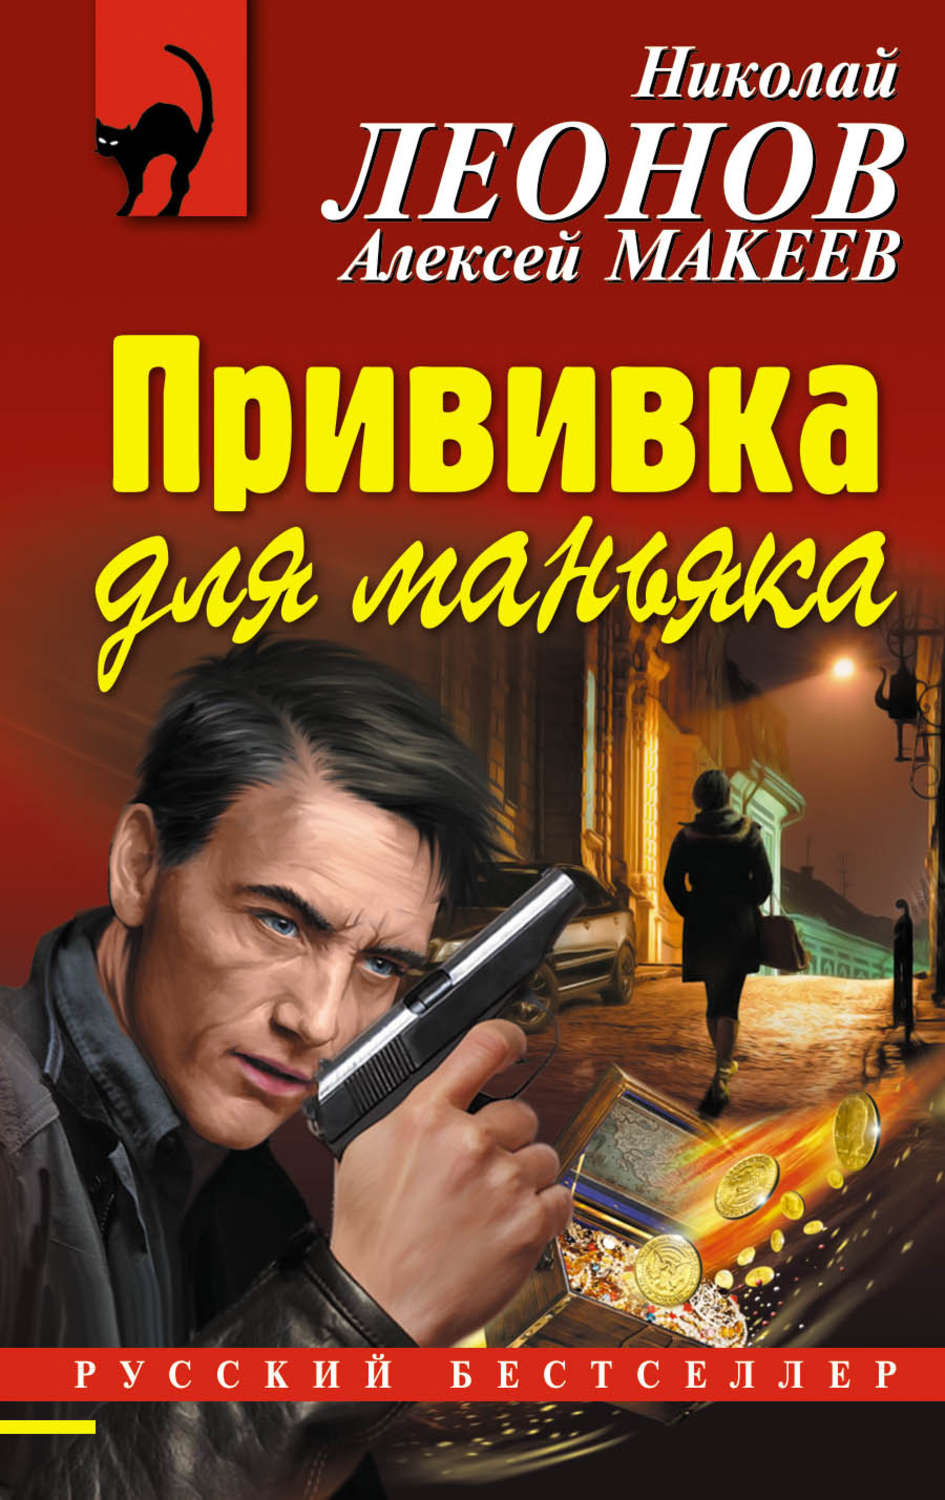 Писатели детективов список. Детективы книги. Российские детективы книги. Русские детективы книги авторы. Интересные книги детективы.